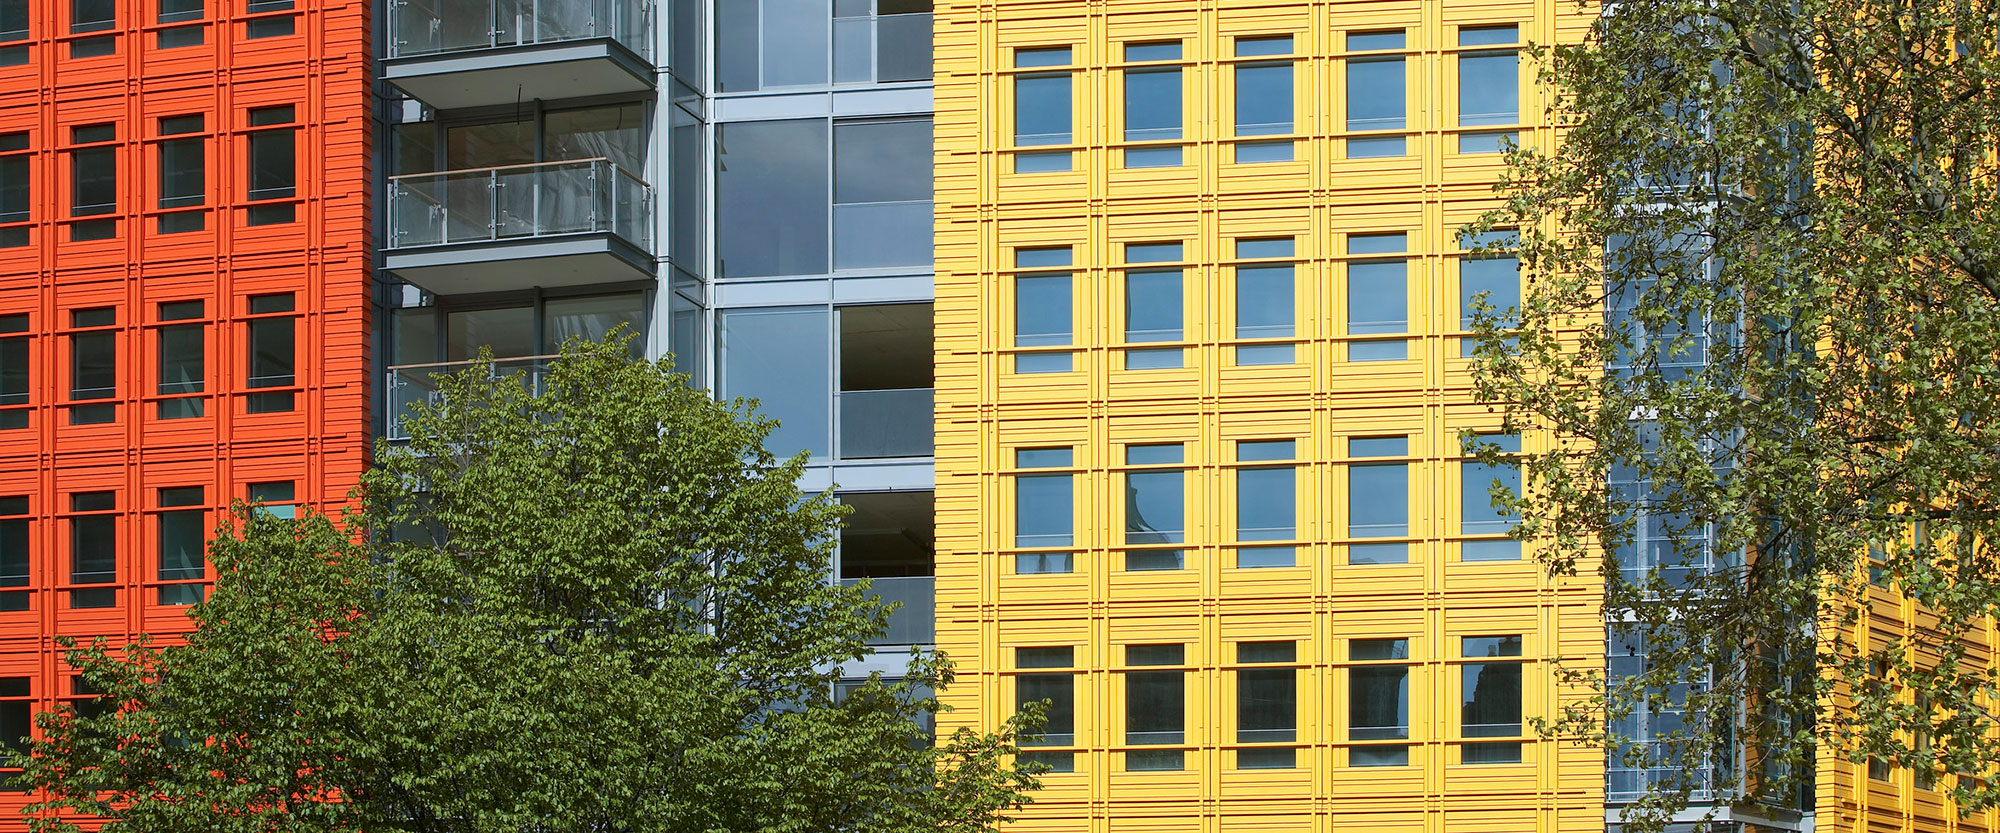 Colourful building facades